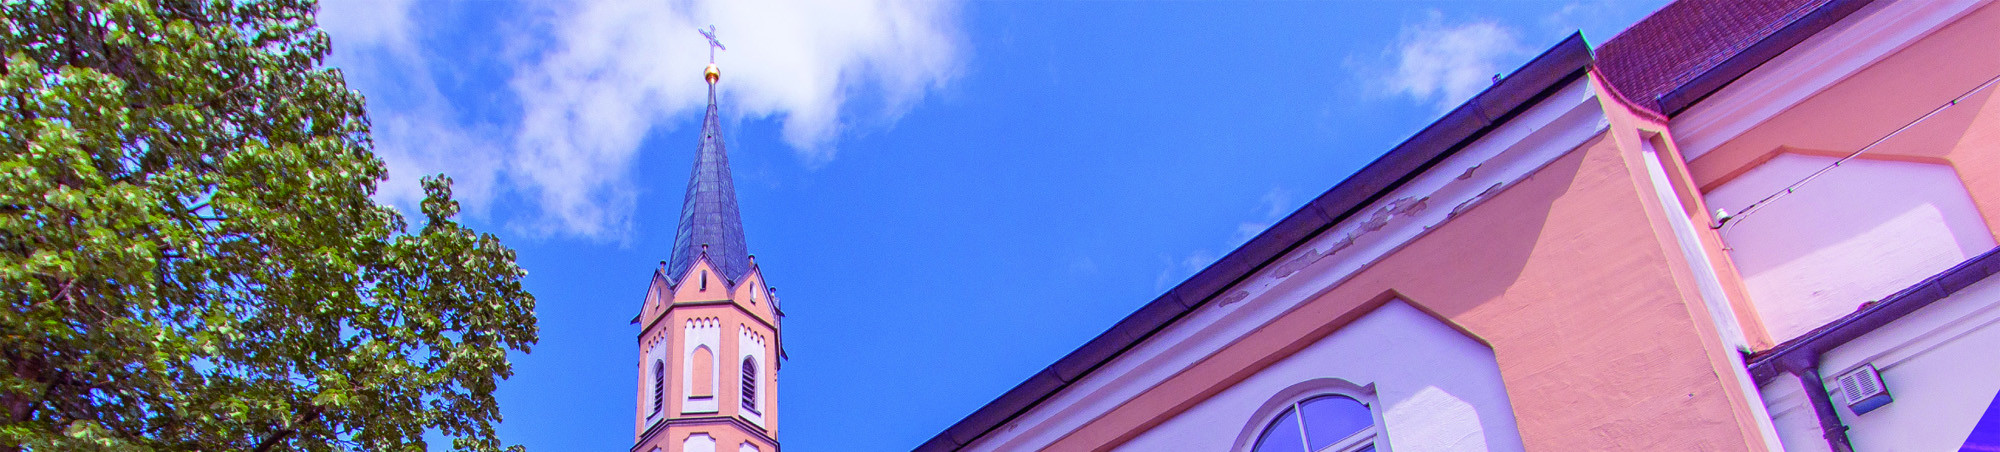 Ein Bildausschnitt der Salvatorkirche aus Froschperspektive.